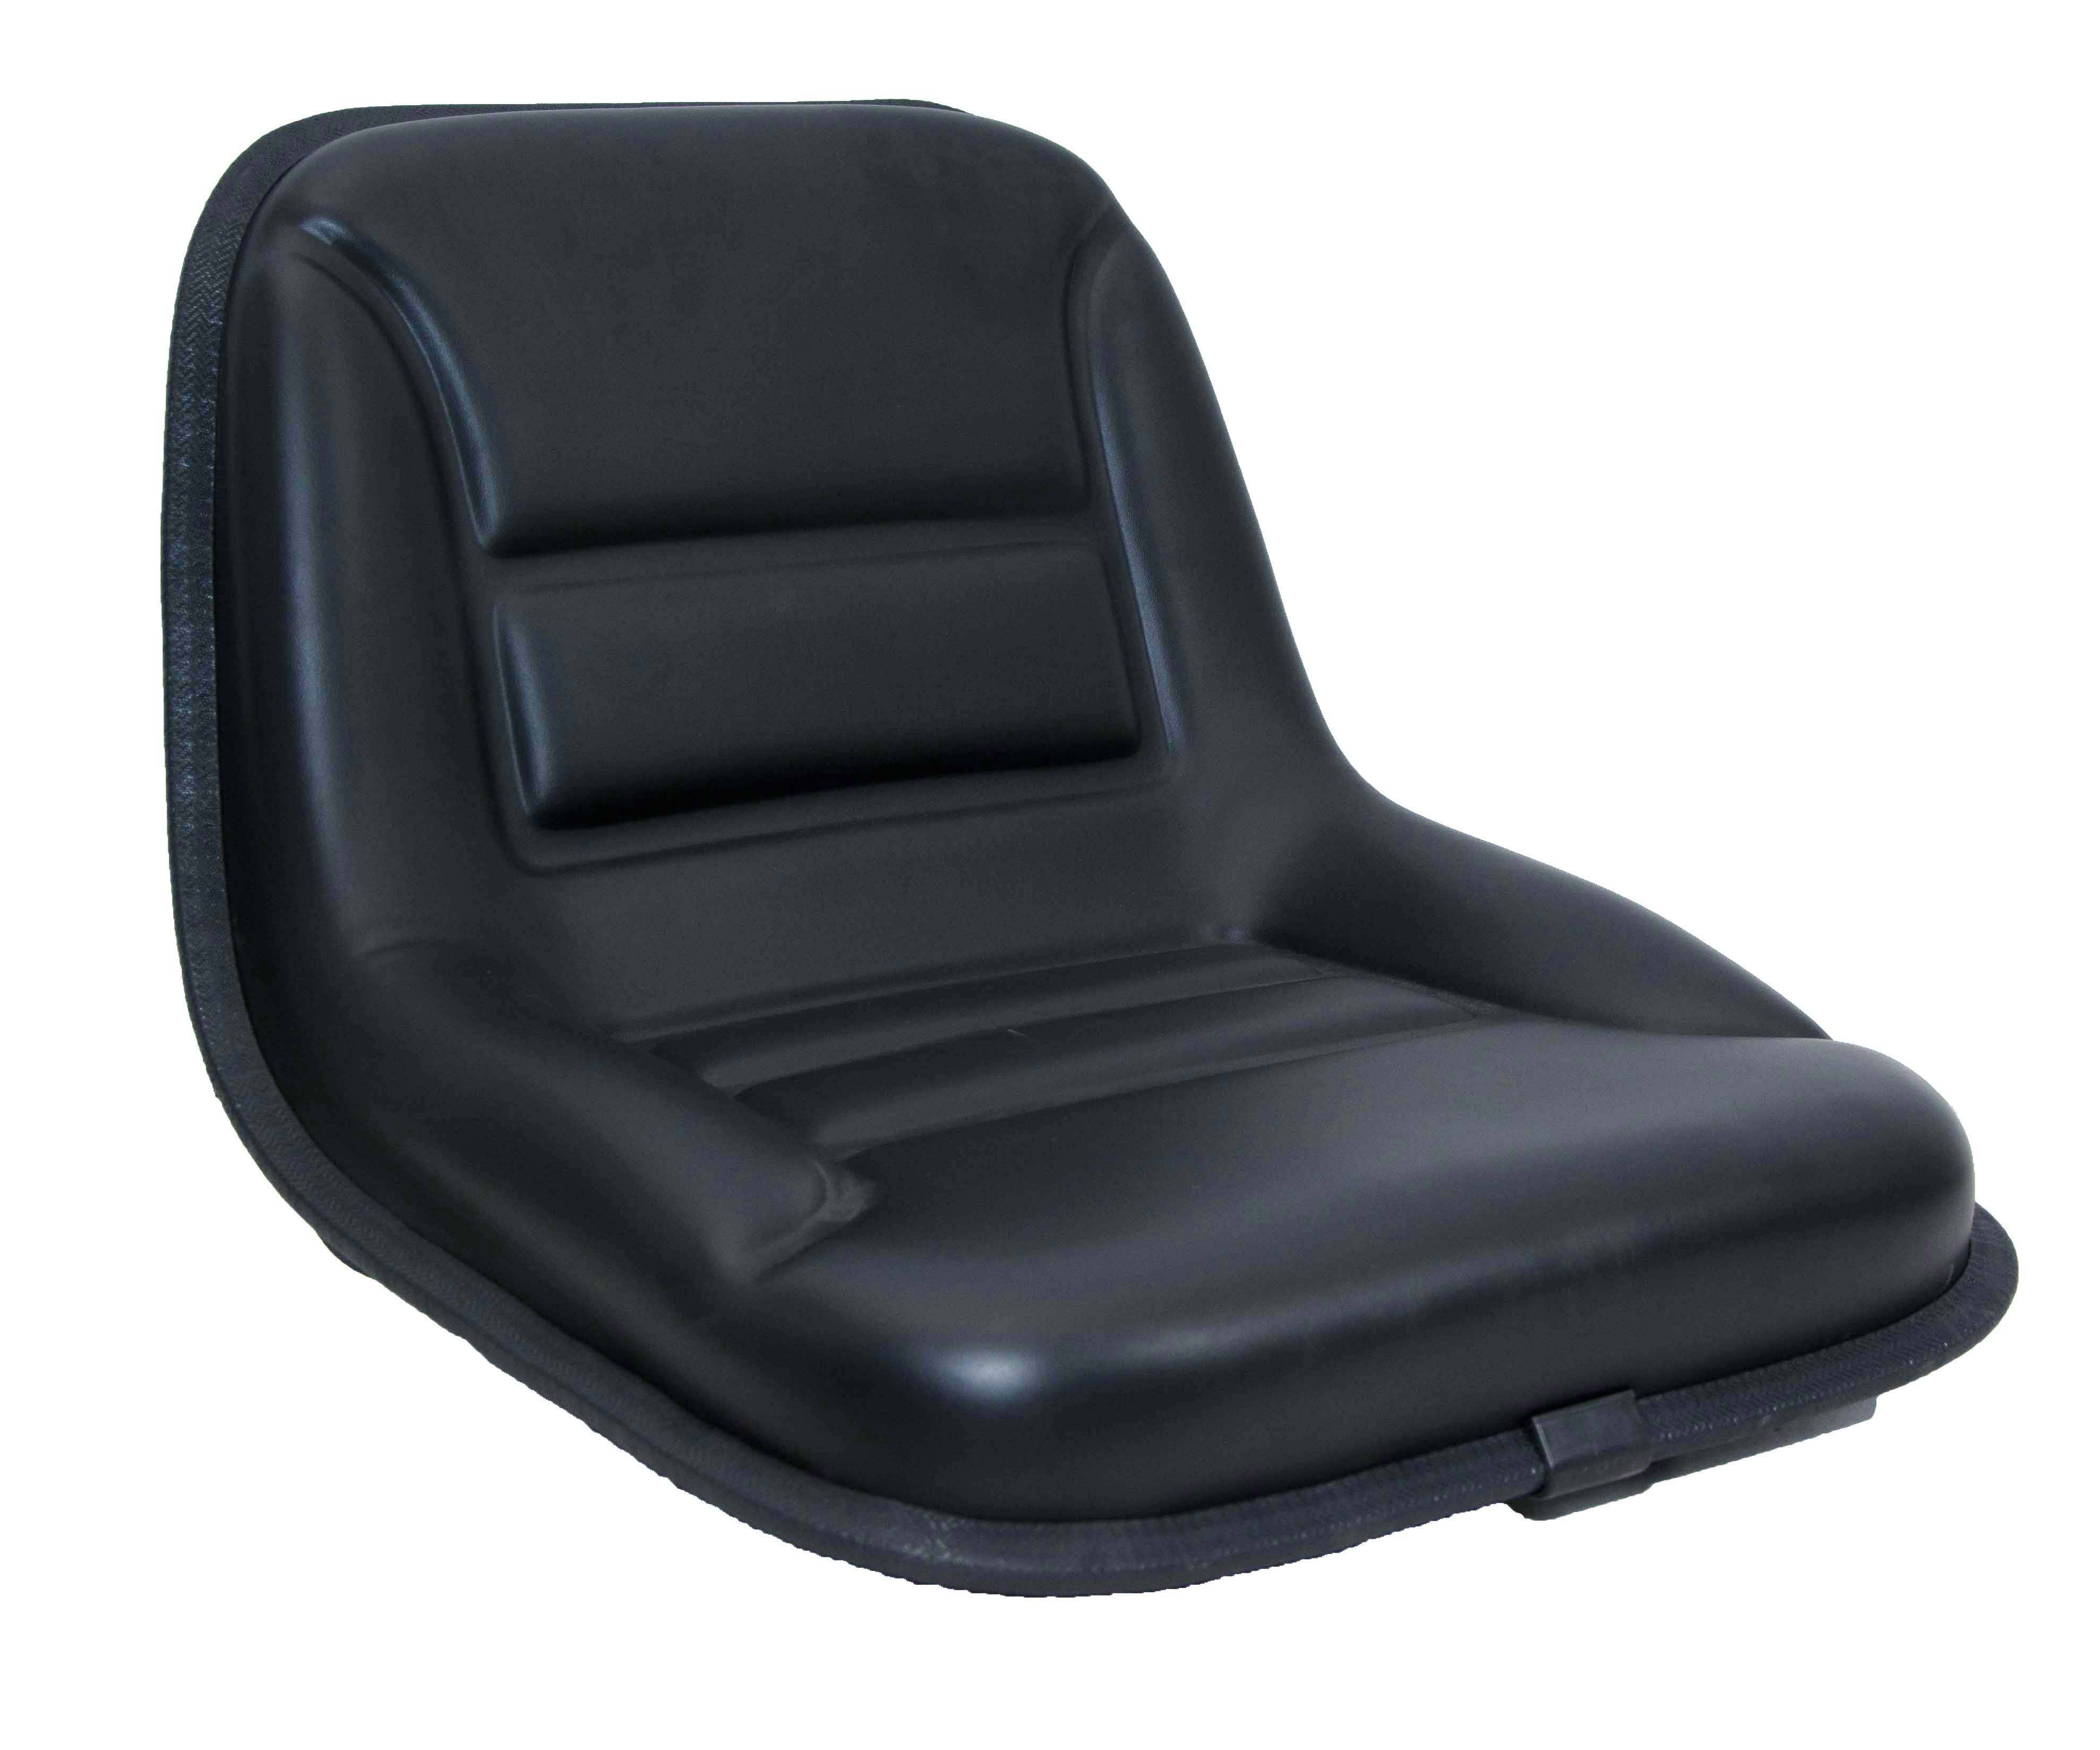 100% Original Factory Suspension Bucket Seats - YY29 Universal farm tractor seat – Qinglin Seat